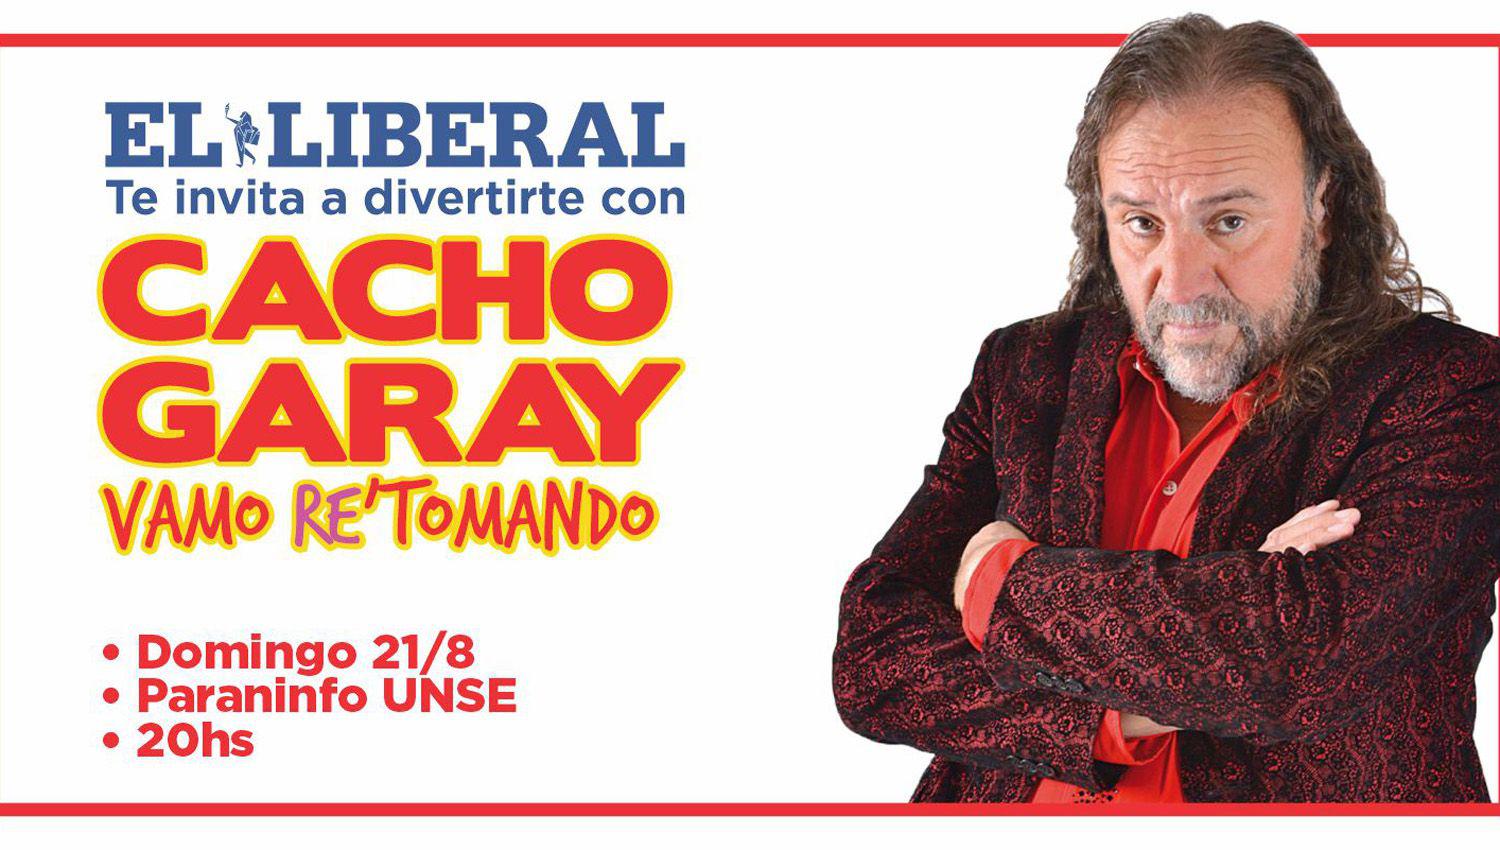 EL LIBERAL te invita a participar del sorteo de entradas para el show de Cacho Garay